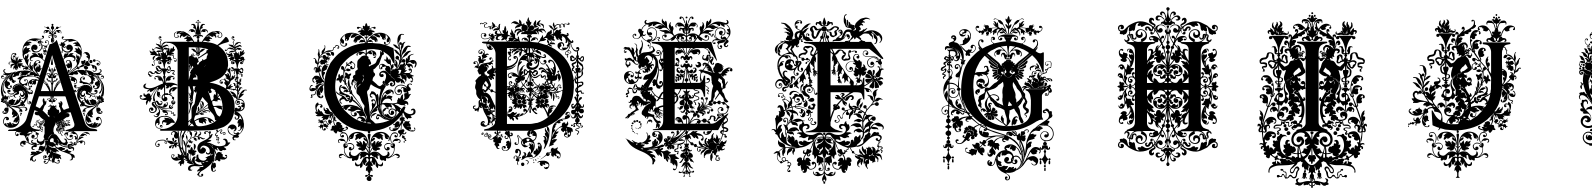 Victorian Ornamental Capitals Font TrueType